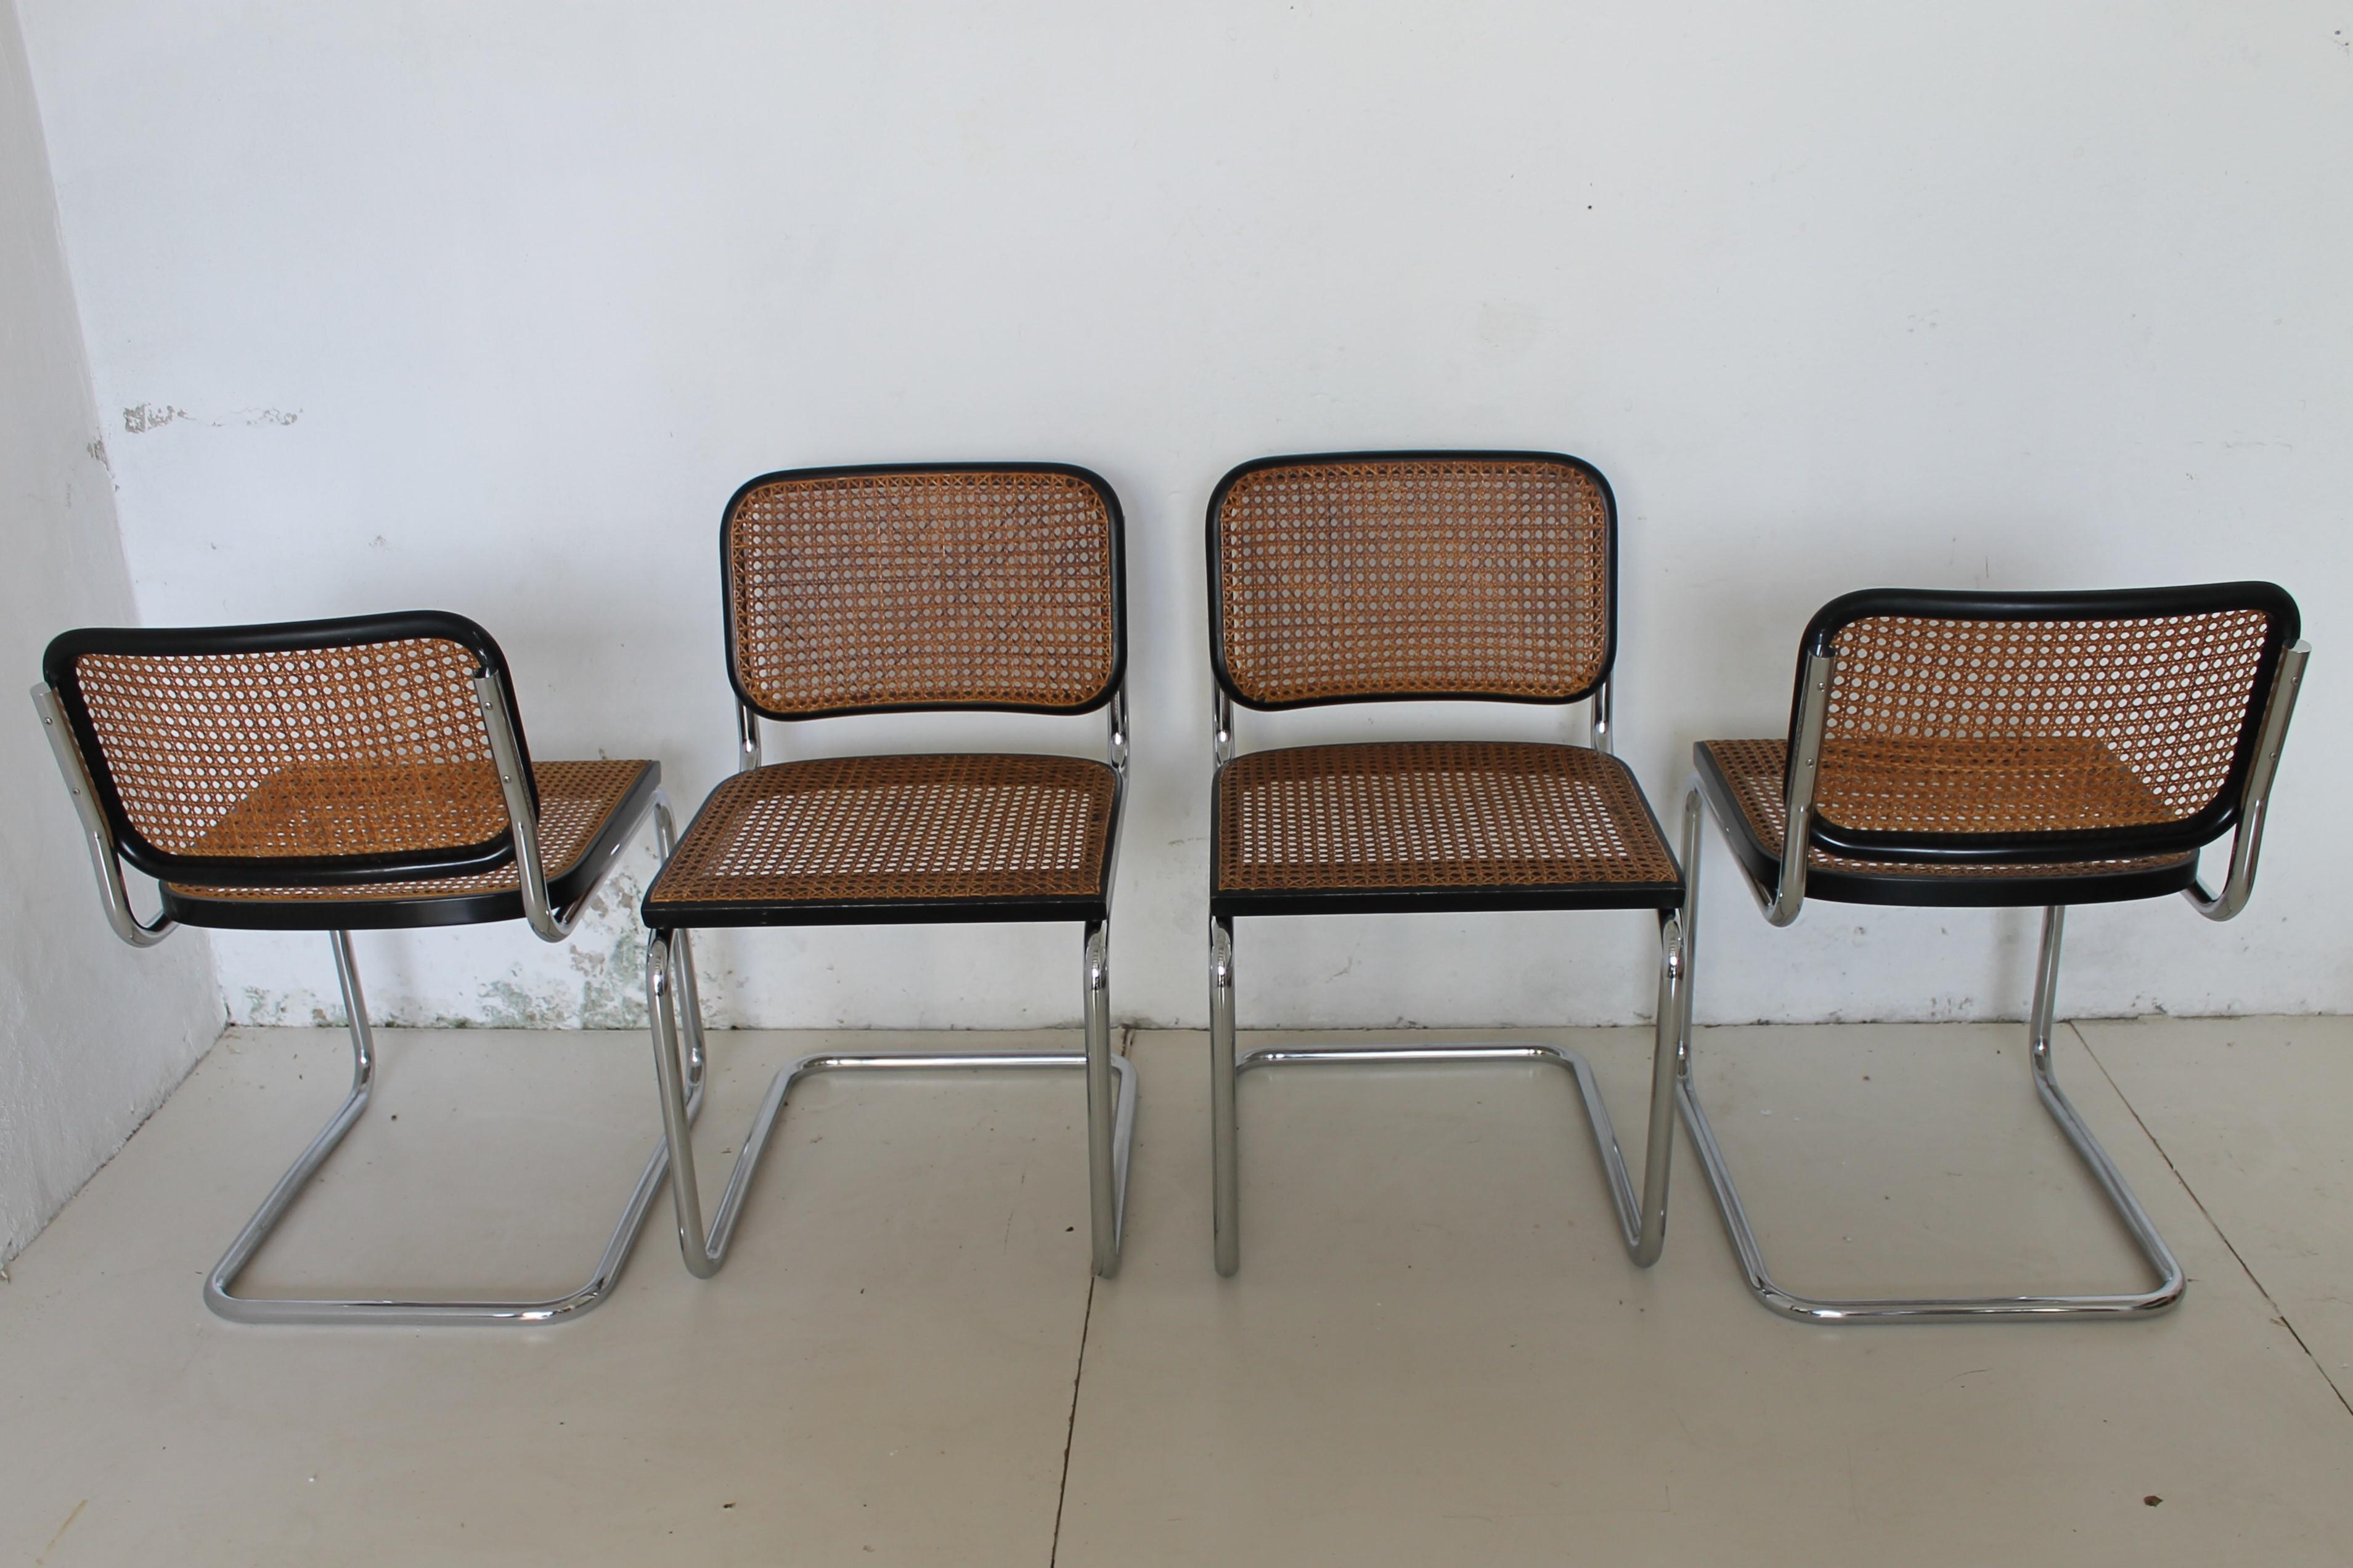 Vier Cesca-Stühle, entworfen von Marcel Breuer für Gavina, datiert um 1965 (das Projekt wurde 1928 entwickelt).

Diese erste Serie ist handgenäht Strohfaden für Faden

Einer mit neuem Sitz 